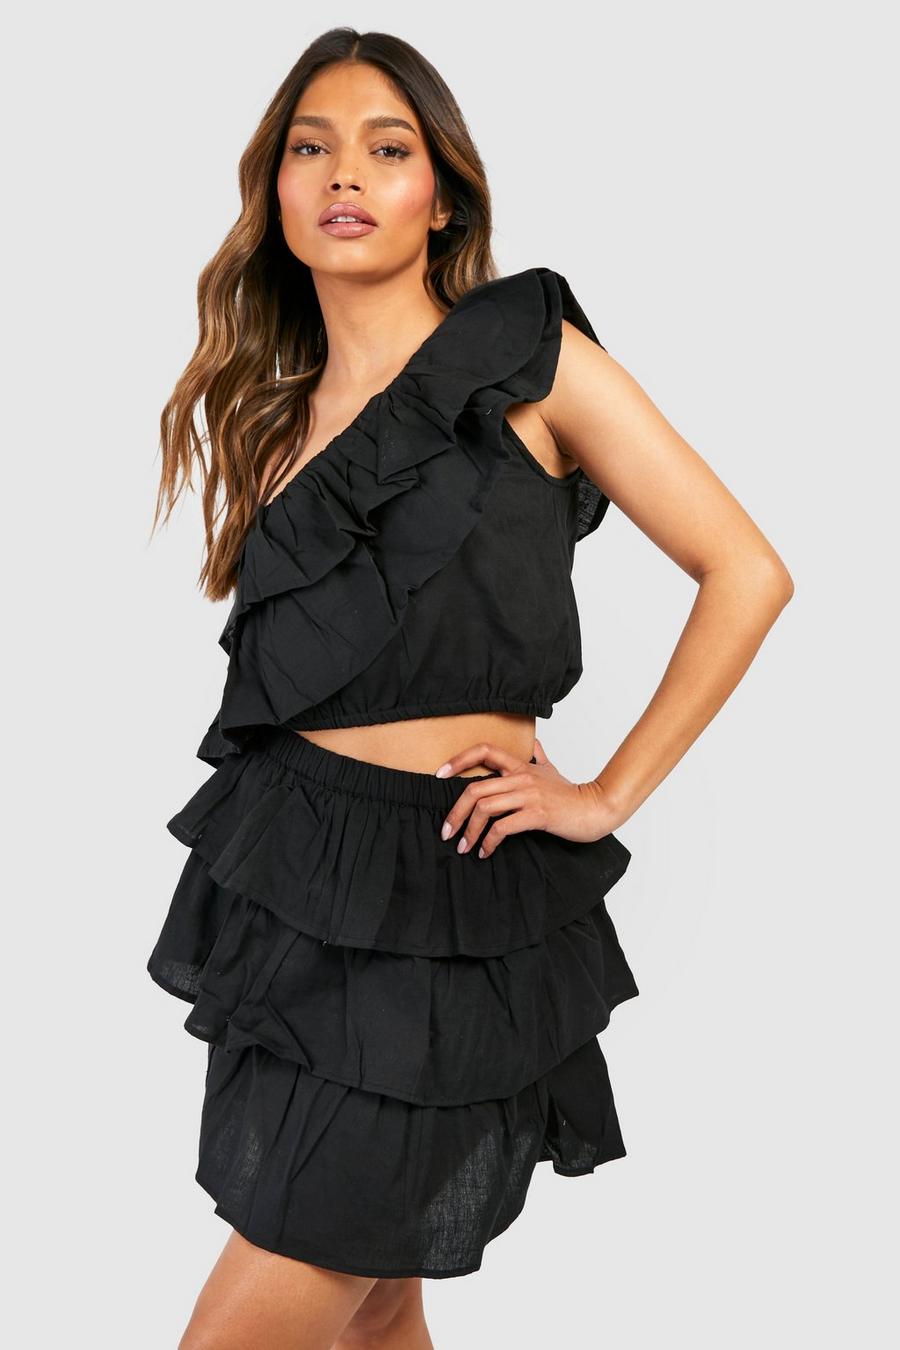 Black One Shoulder Ruffle Top & Mini Skirt